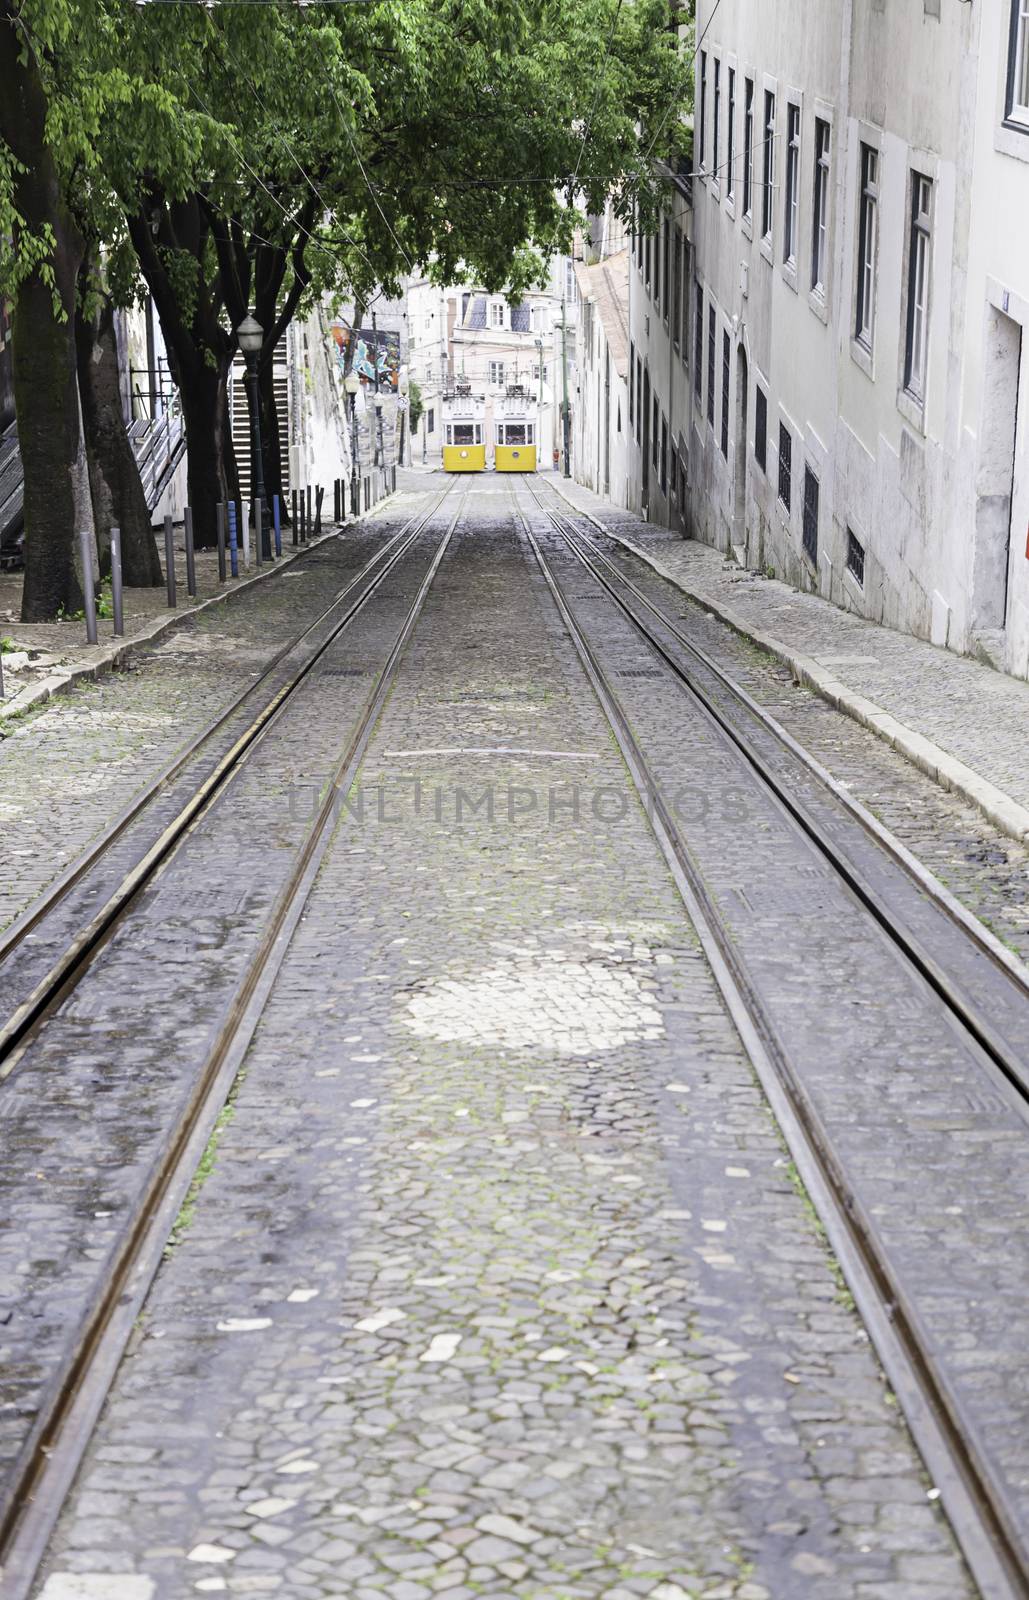 Old trams in Lisbon by esebene